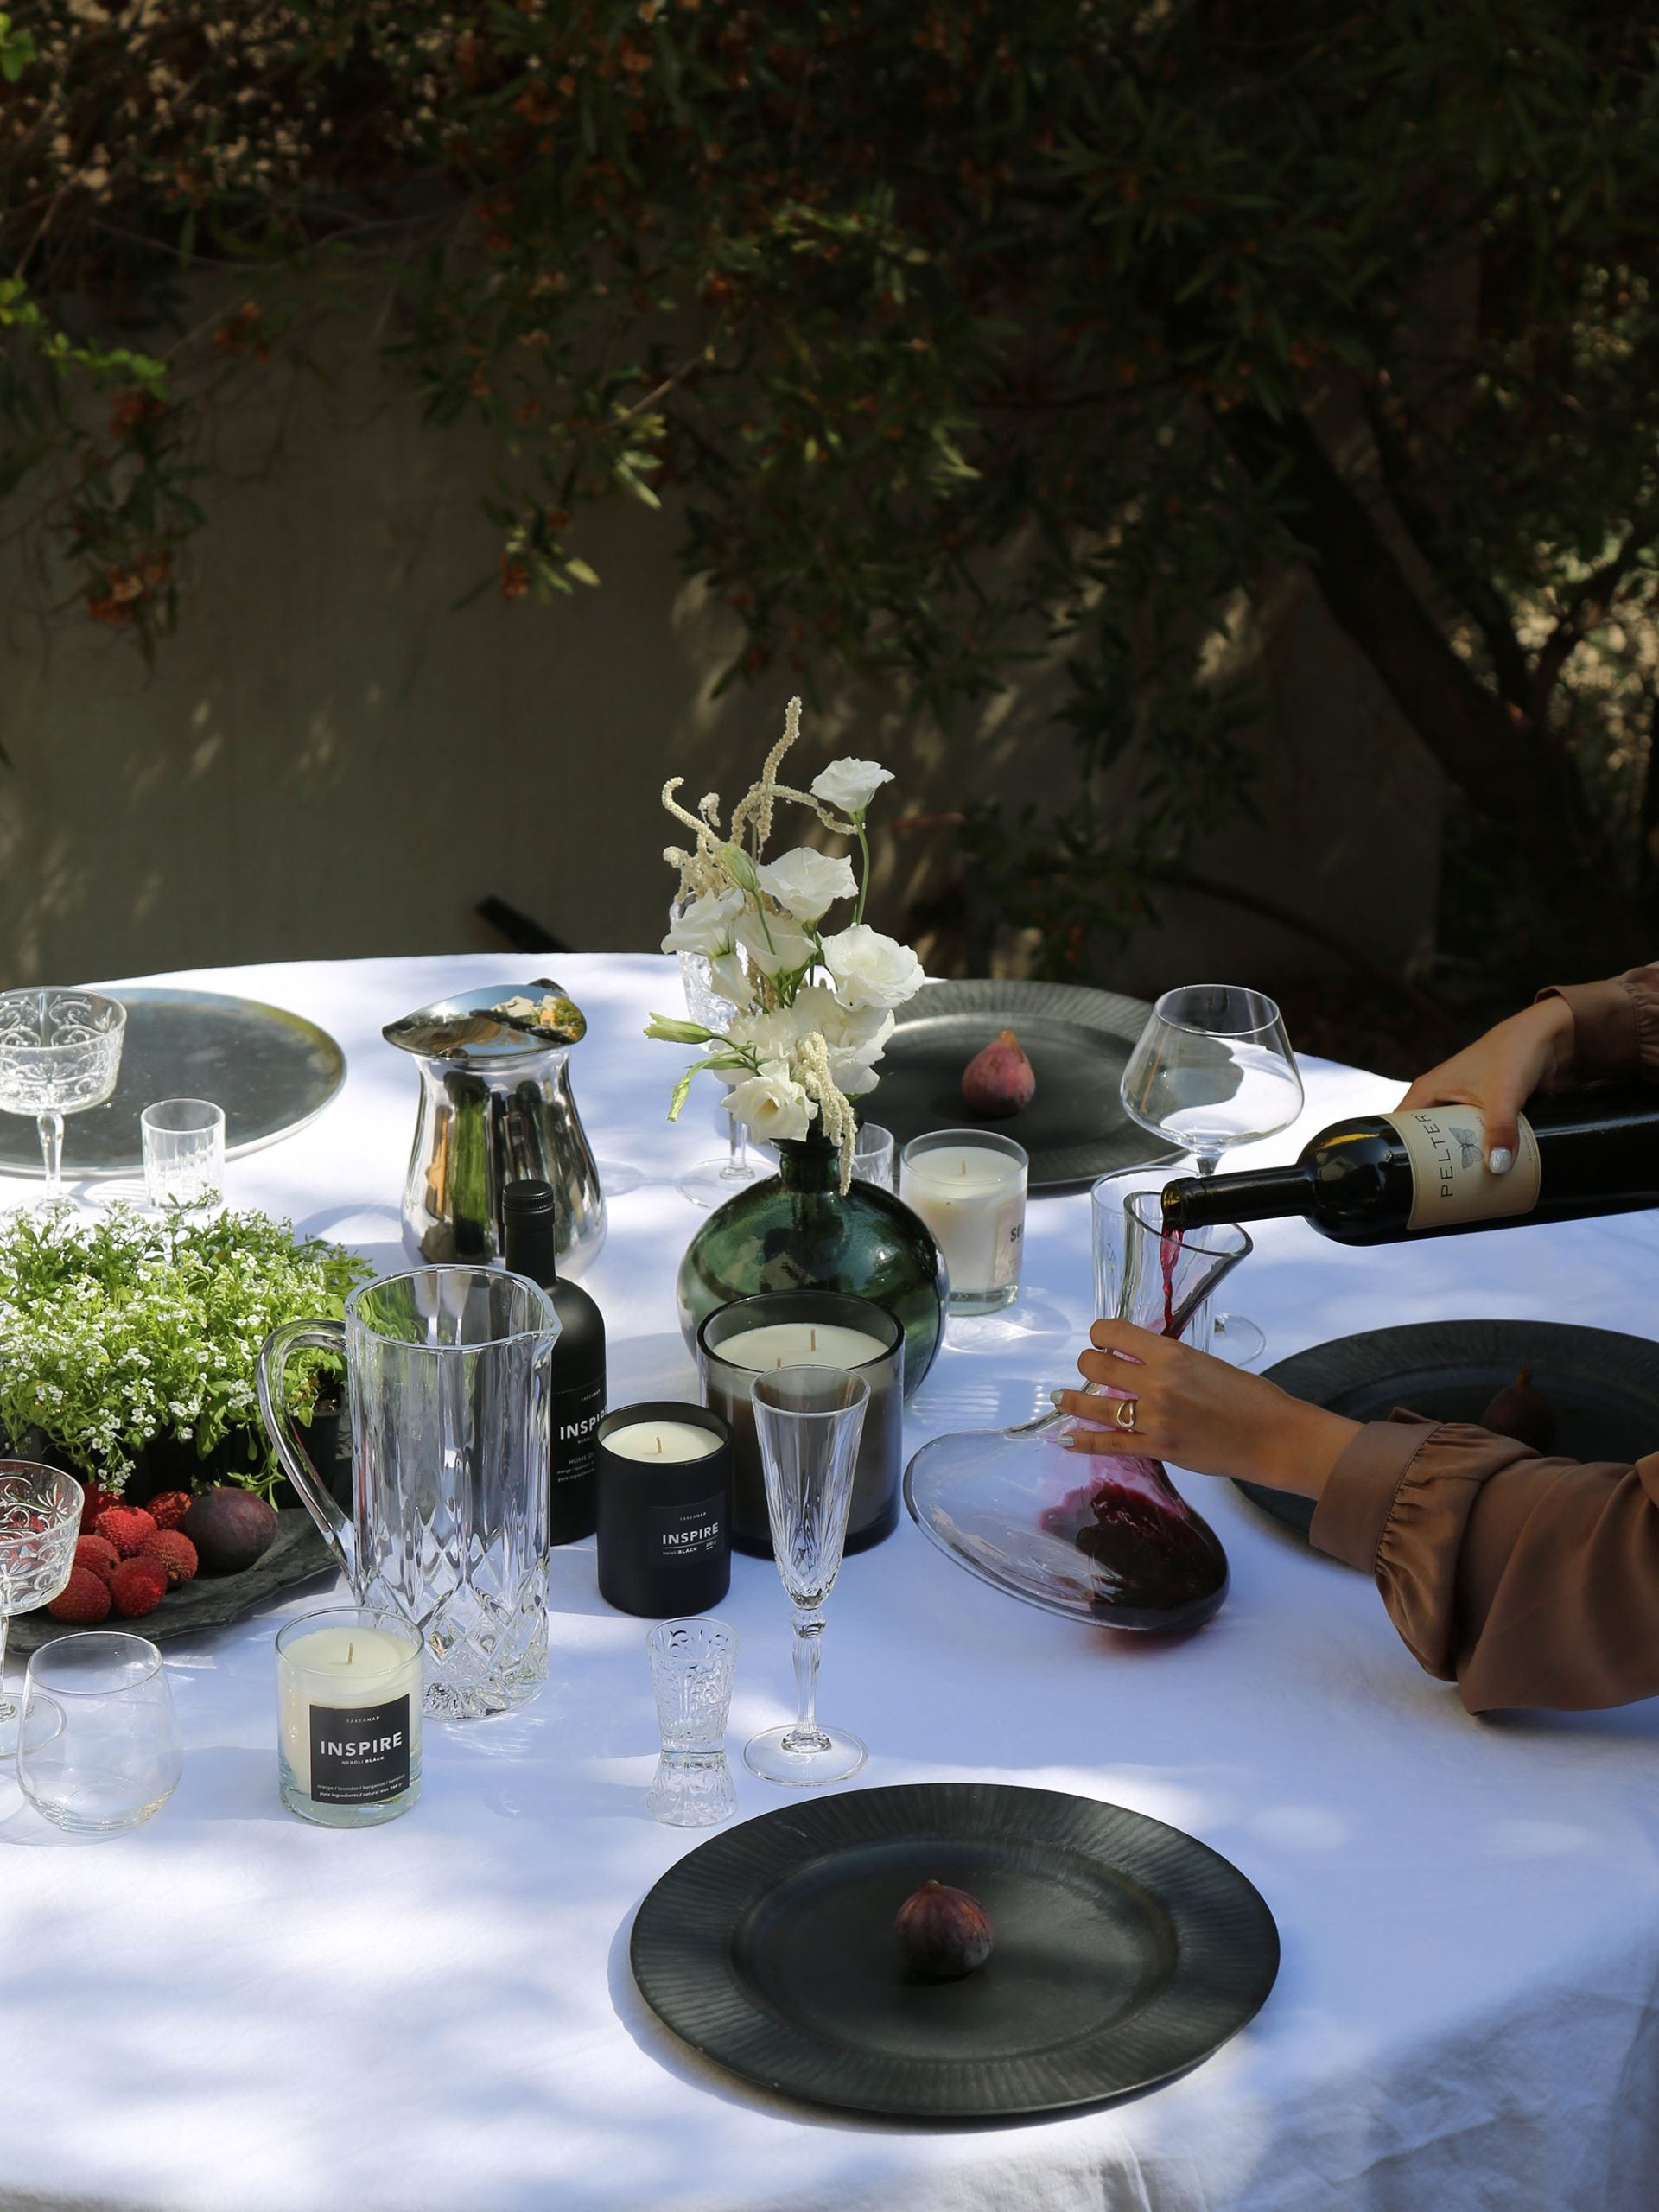 אישה מוזגת יין לתוך דקנטר יין מזכוכית על שולחן ערוך עם מפה לבנה שעליו כוסות שמפניה, צלחות מעוצבות ונרות ריחניים